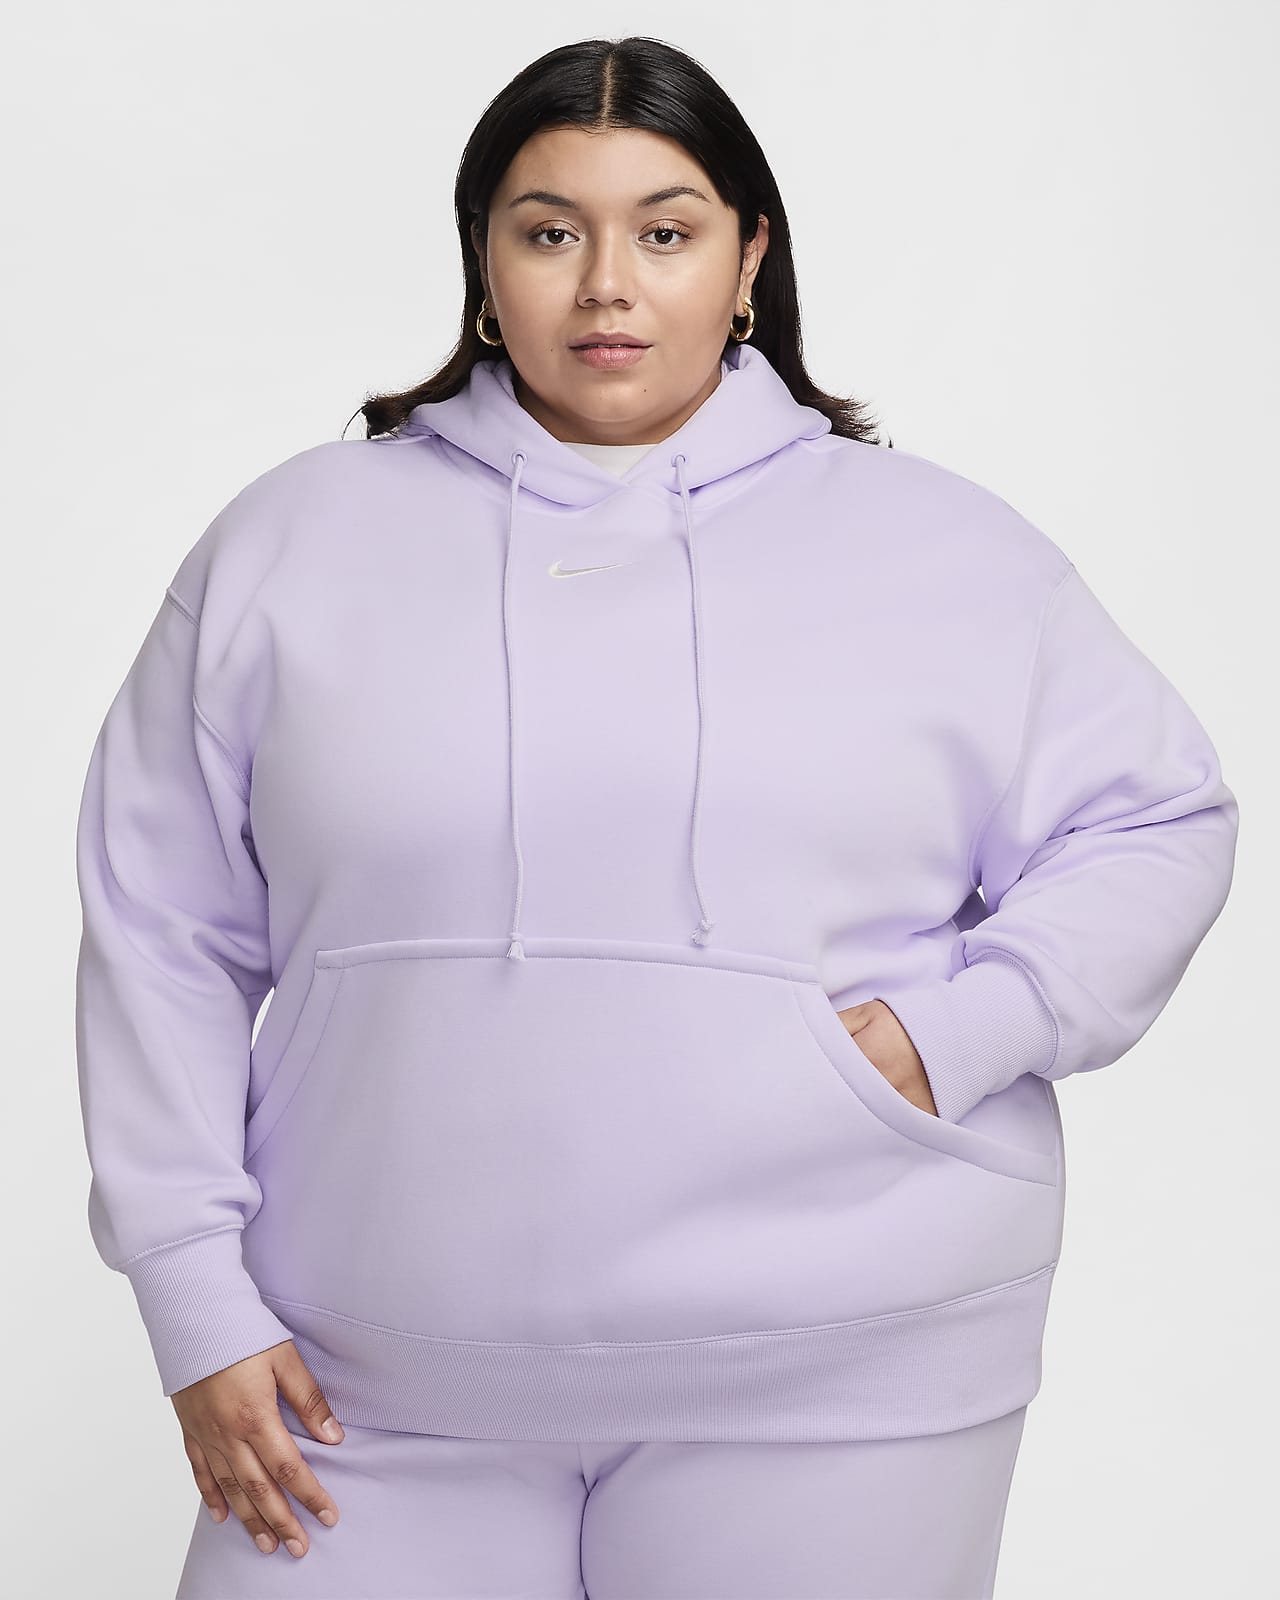 Γυναικείο φούτερ με κουκούλα σε φαρδιά γραμμή Nike Sportswear Phoenix Fleece (μεγάλα μεγέθη)